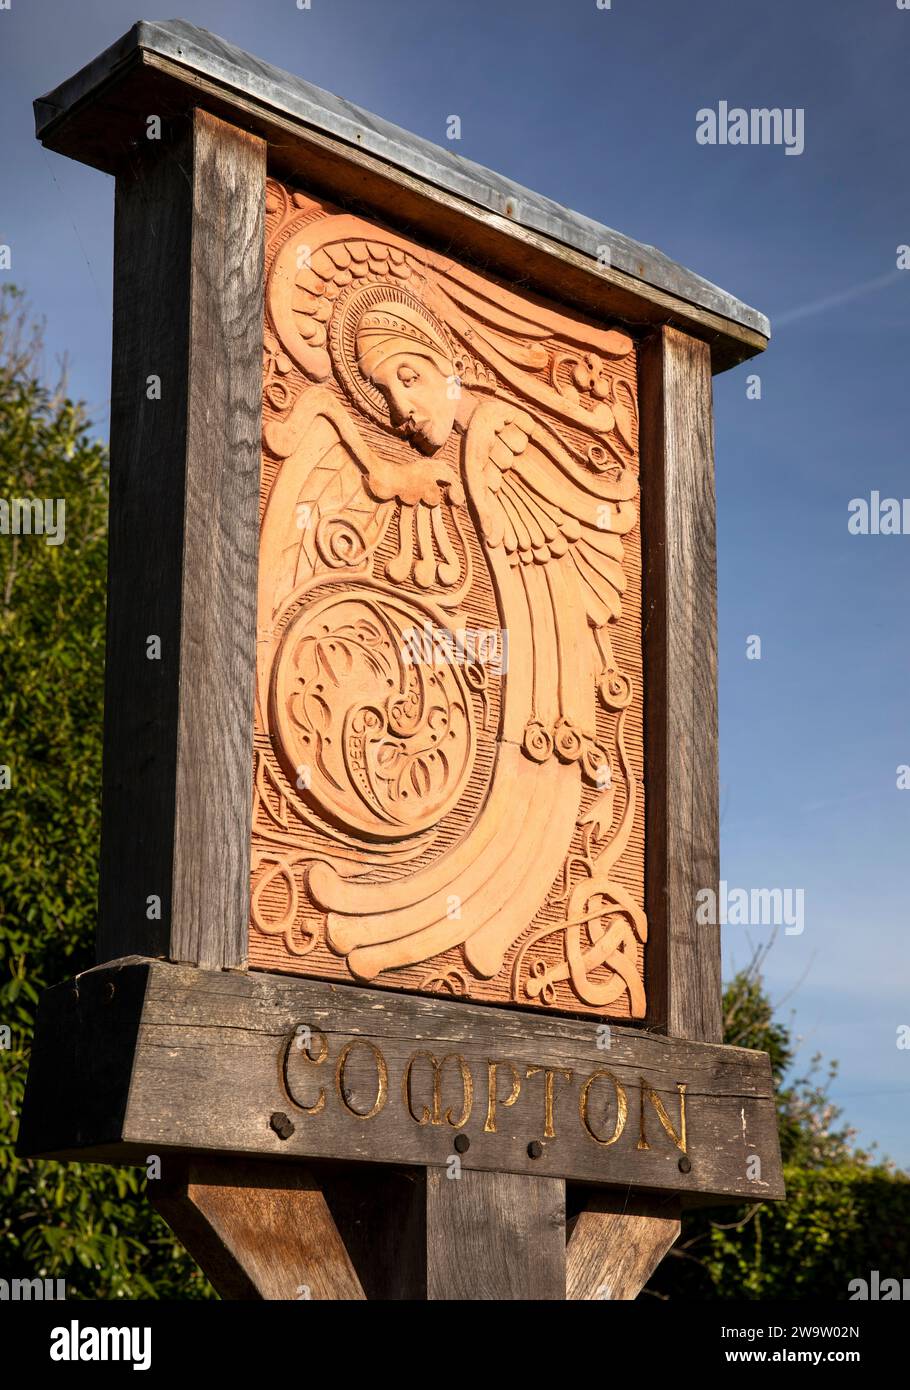 Royaume-Uni, Angleterre, Surrey, Compton, panneau de village en céramique fabriqué à Compton Potters' Arts Guild Banque D'Images